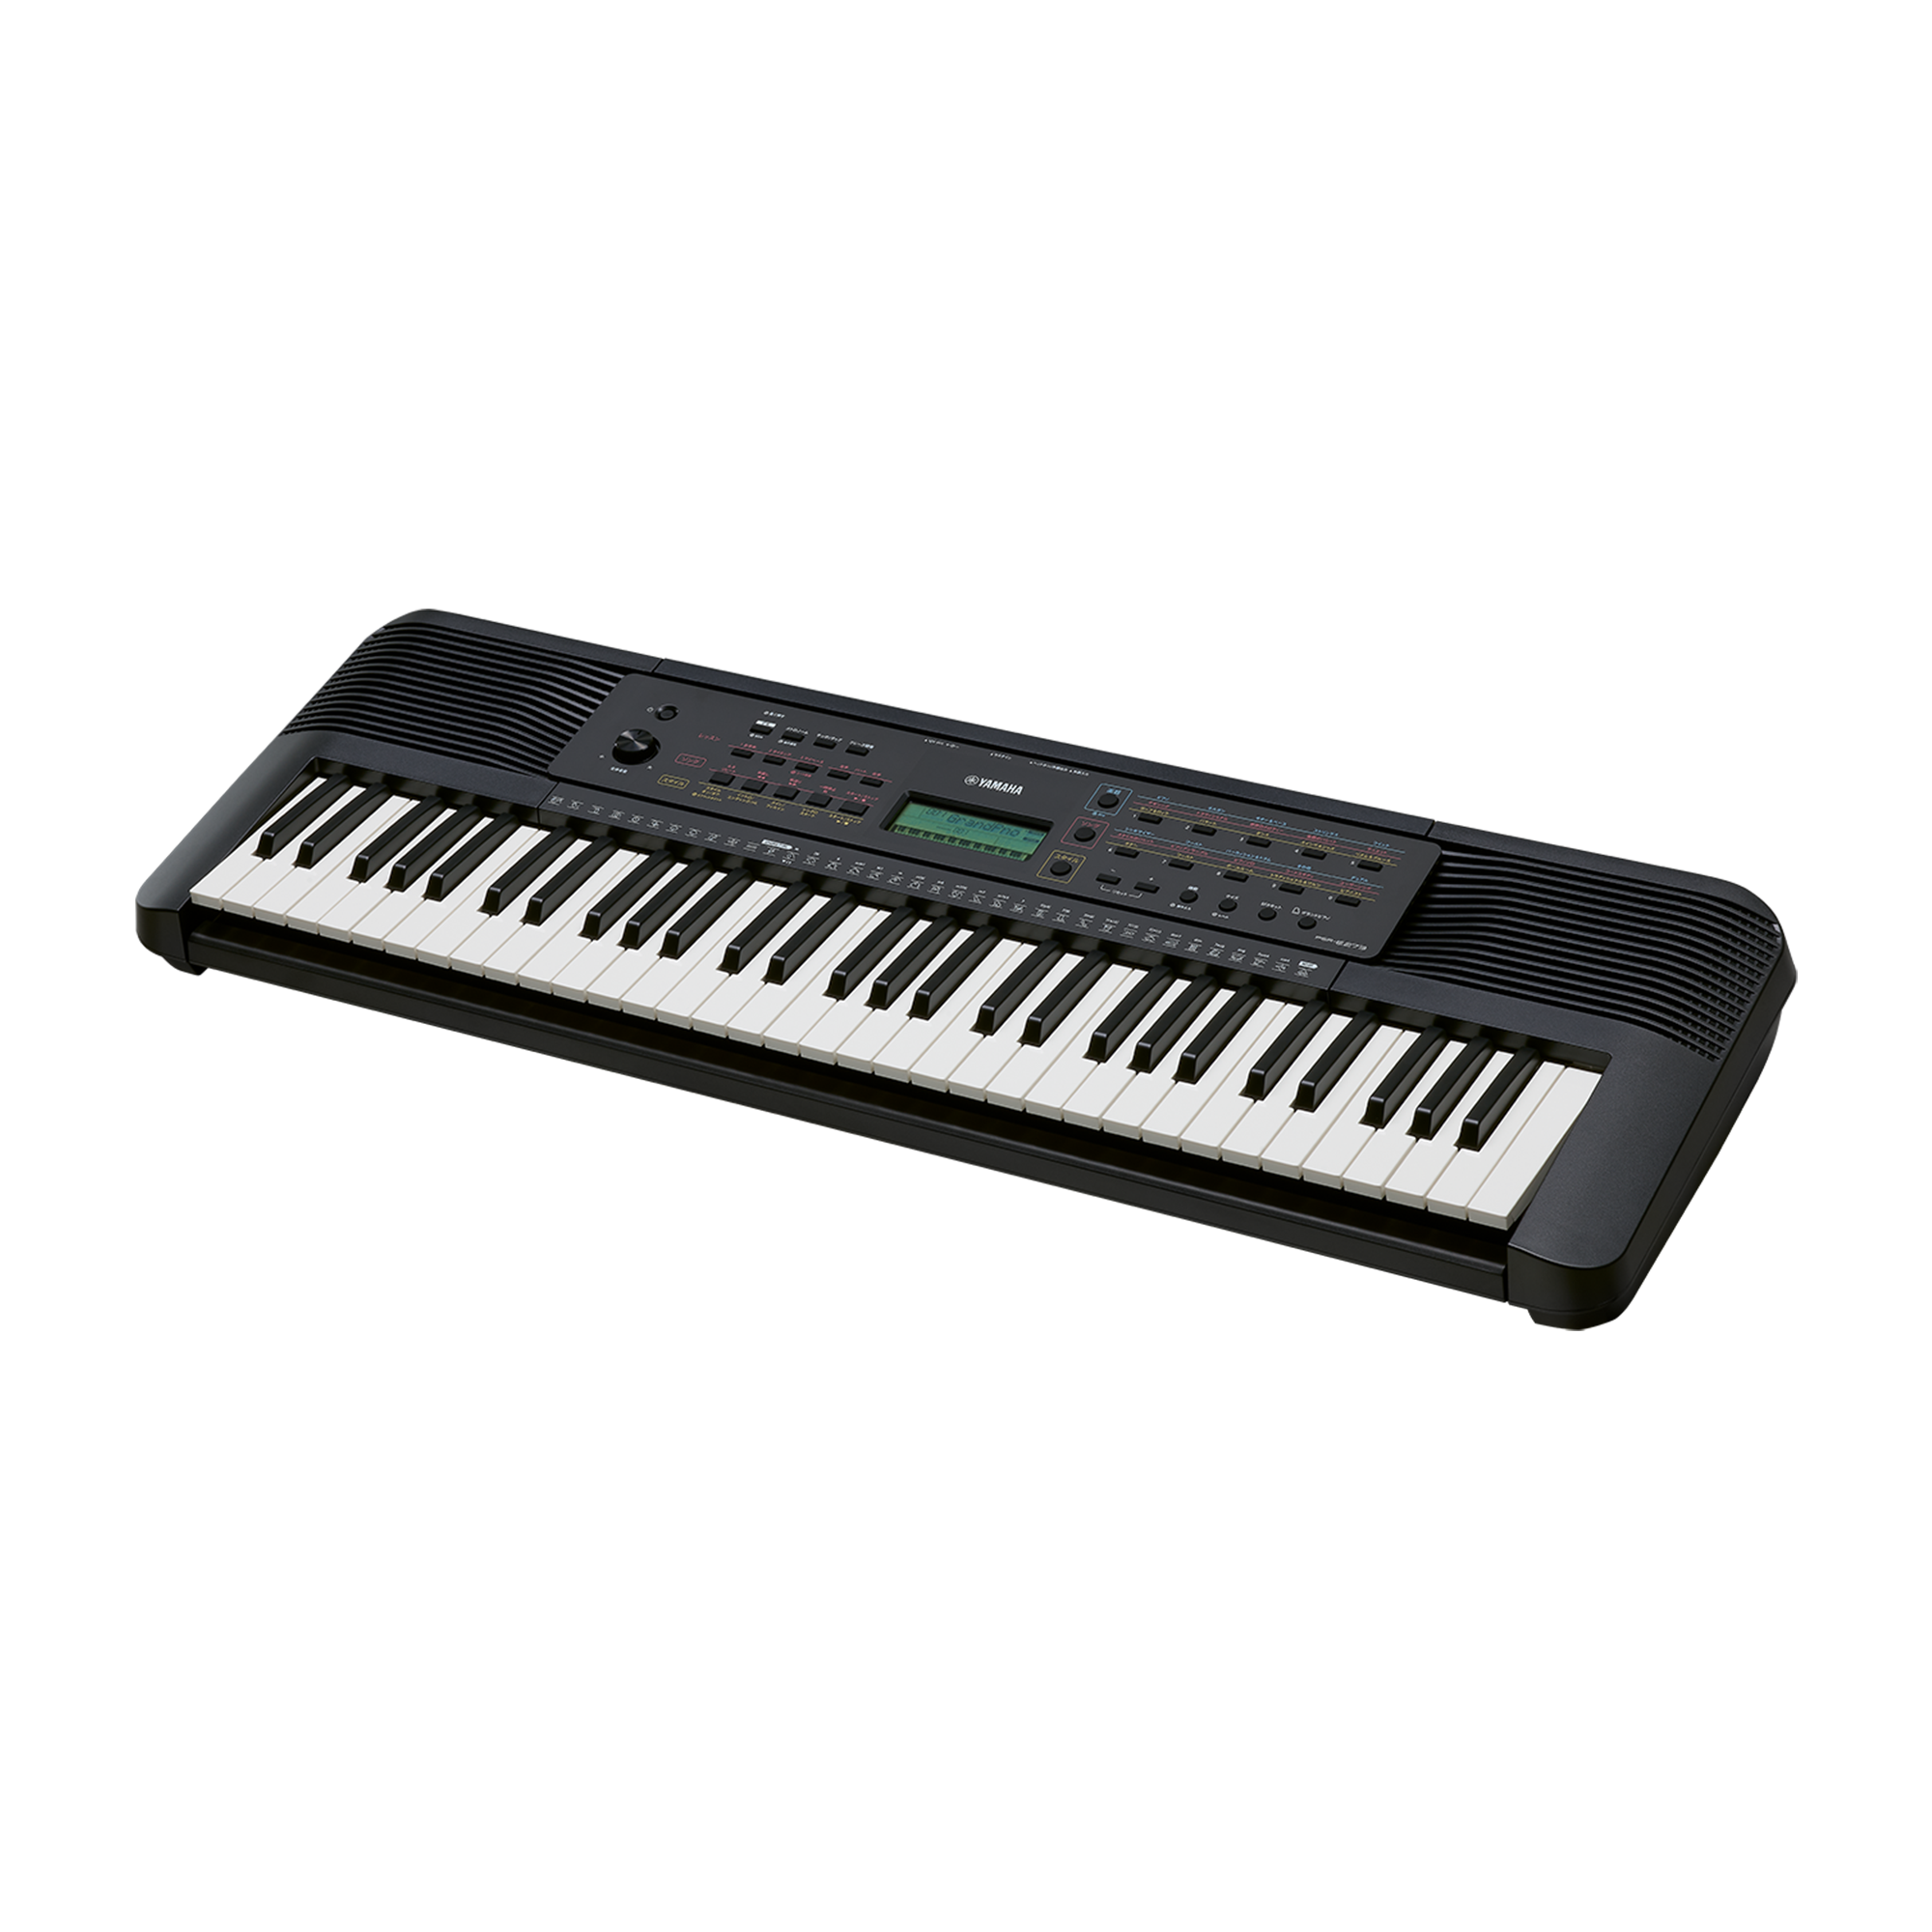 直送商品手渡し前提価格:ヤマハ PSR E363 電子ピアノ 譜面台、スタンド付き 鍵盤楽器